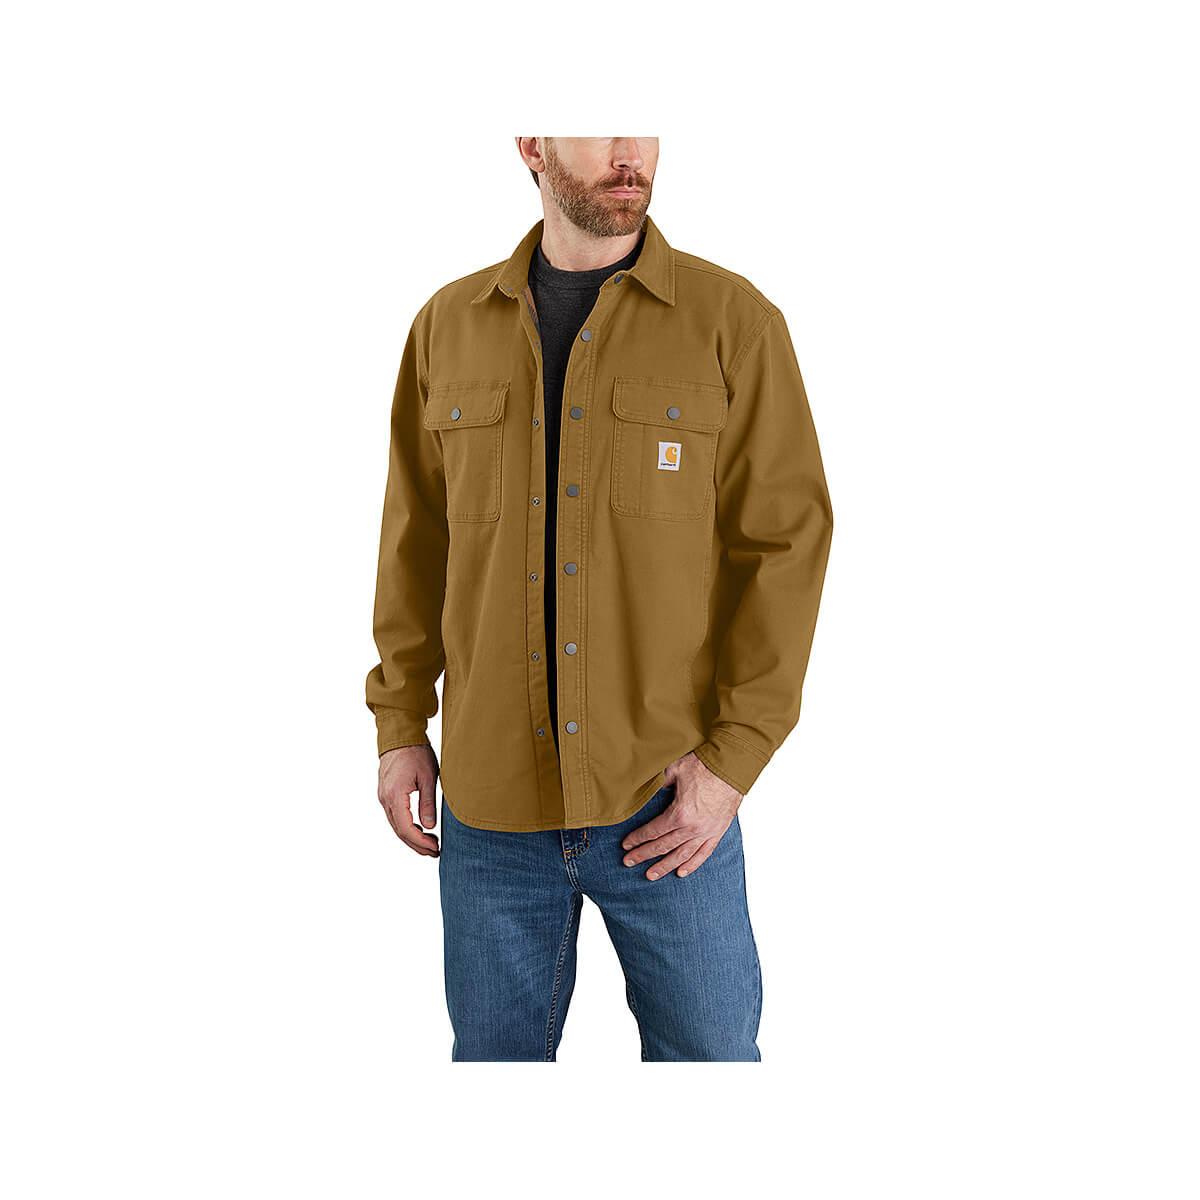  Men's Rugged Flex Fleece Lined Canvas Shirt Jacket